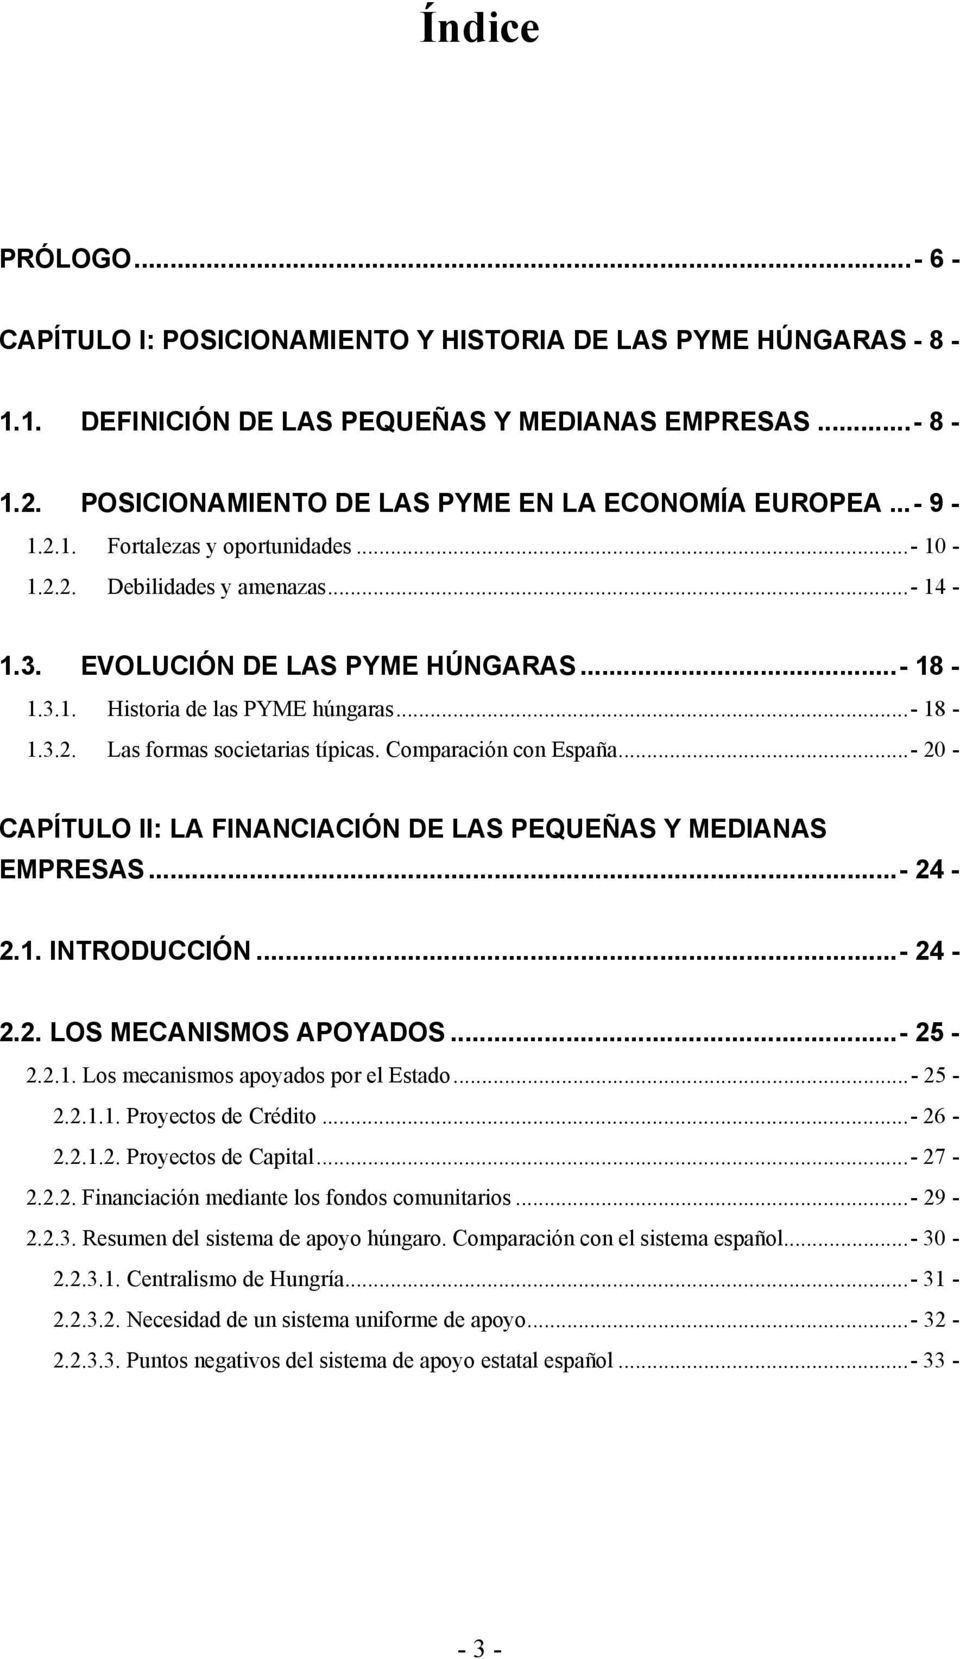 ..- 18-1.3.2. Las formas societarias típicas. Comparación con España...- 20 - CAPÍTULO II: LA FINANCIACIÓN DE LAS PEQUEÑAS Y MEDIANAS EMPRESAS...- 24-2.1. INTRODUCCIÓN...- 24-2.2. LOS MECANISMOS APOYADOS.